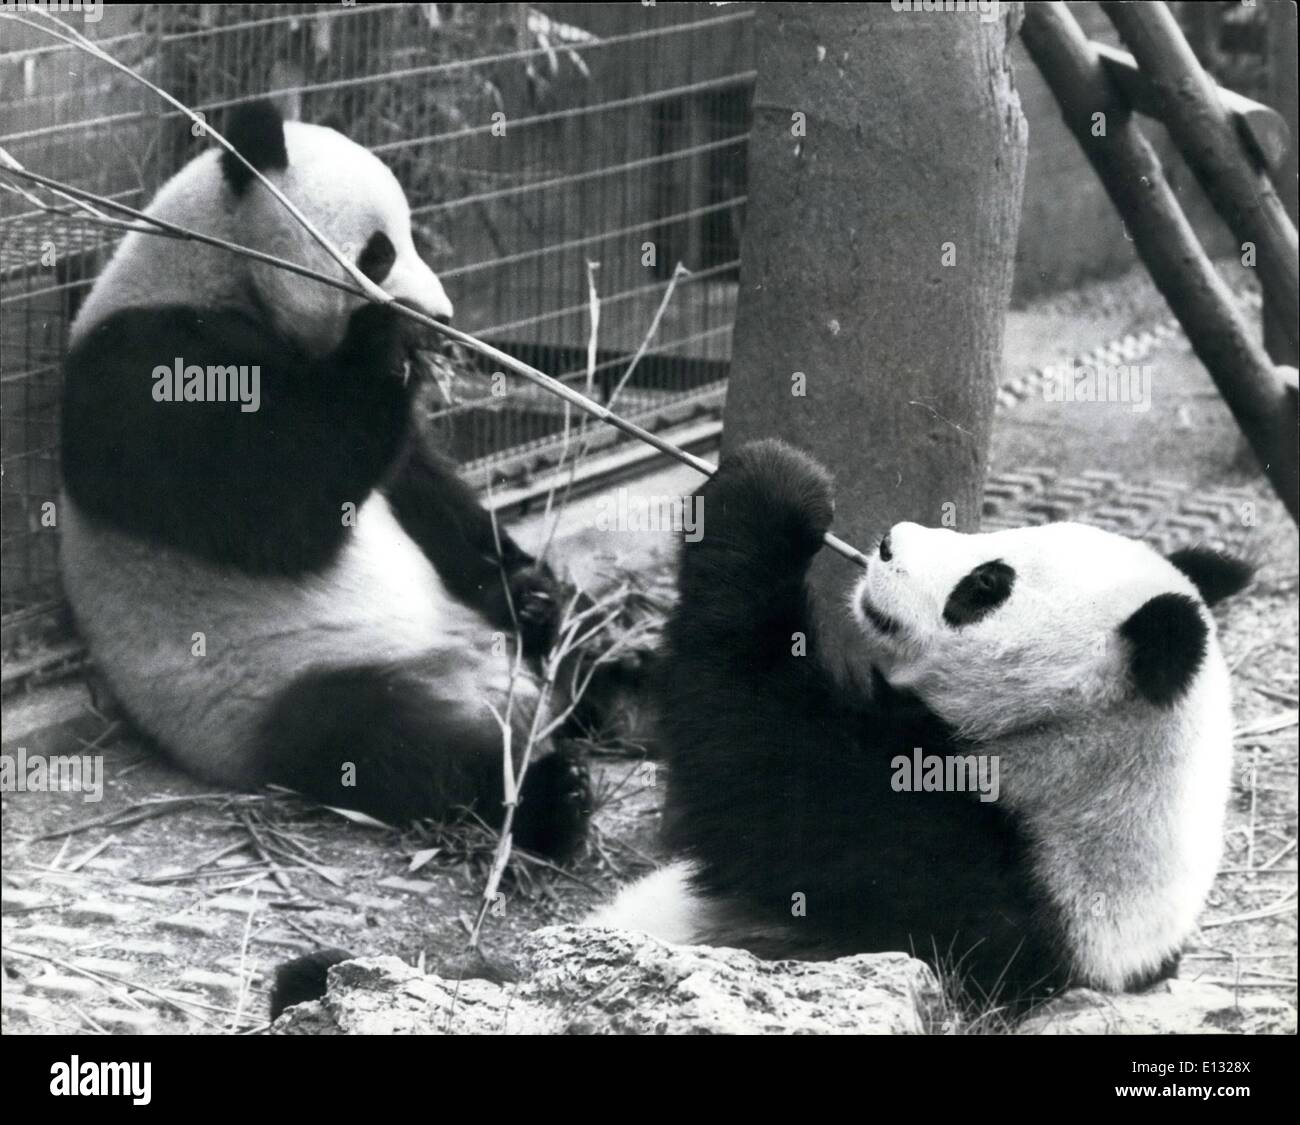 Le 26 février 2012 - Nous recevons le long bien. Ching-Ching (femelle) et Chia-Chia (mâle), les deux pandas géants qui est arrivé en Grande-Bretagne en septembre dernier à titre de dons de la Chine s'entendent très bien, à s'en tenir étroitement, comme cette photo du Zoo de Londres récemment, montre. Banque D'Images